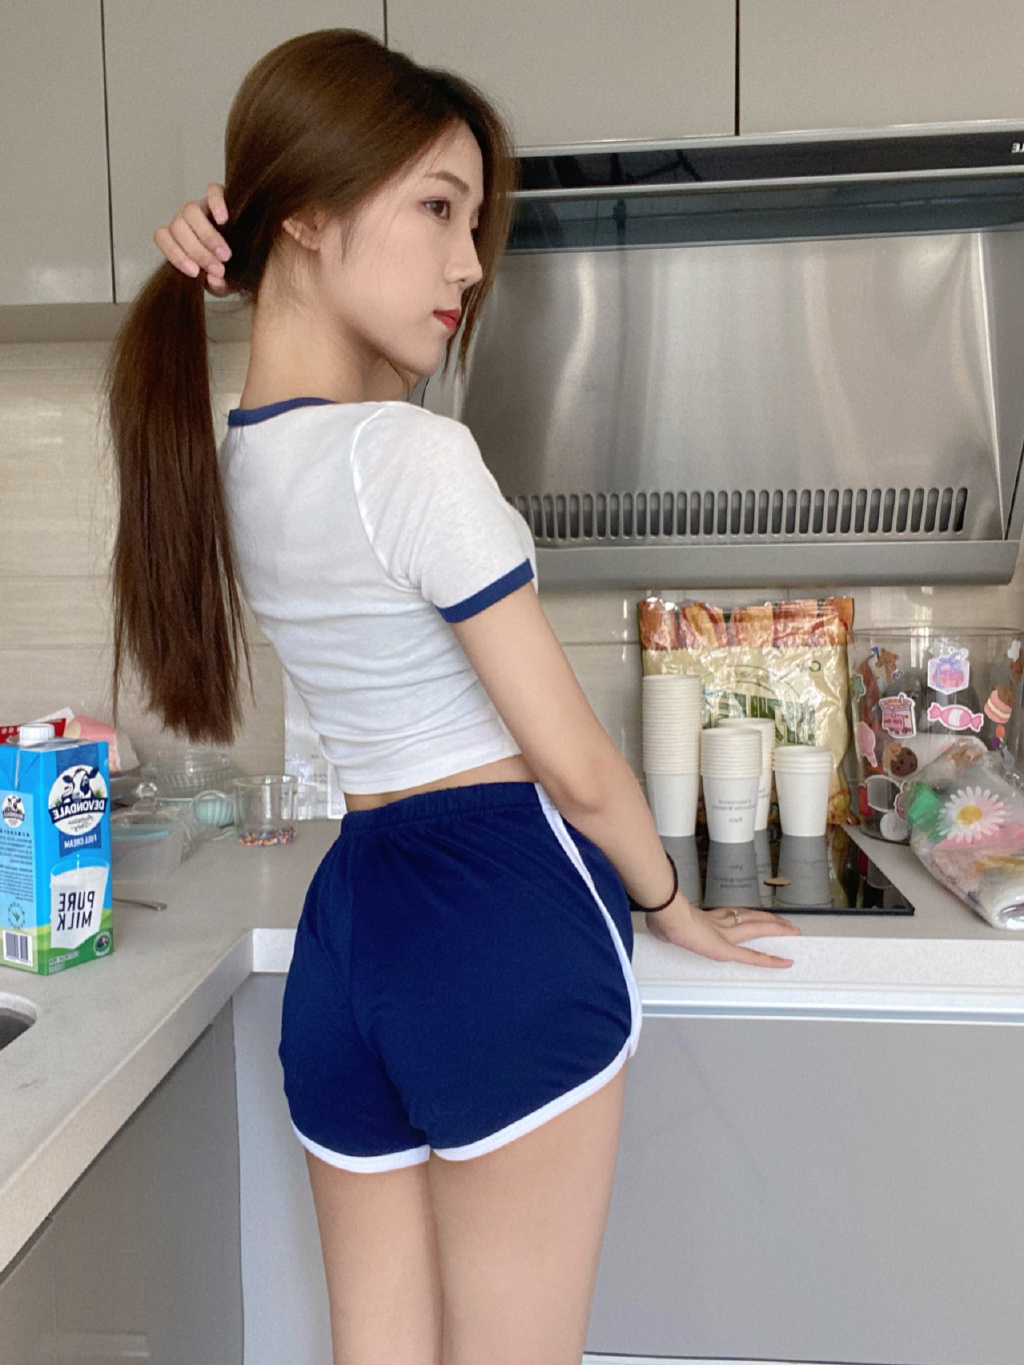 性感可爱美女小姐姐蓝色运动制服短裤白袜穿着居家厨房美拍照片图片